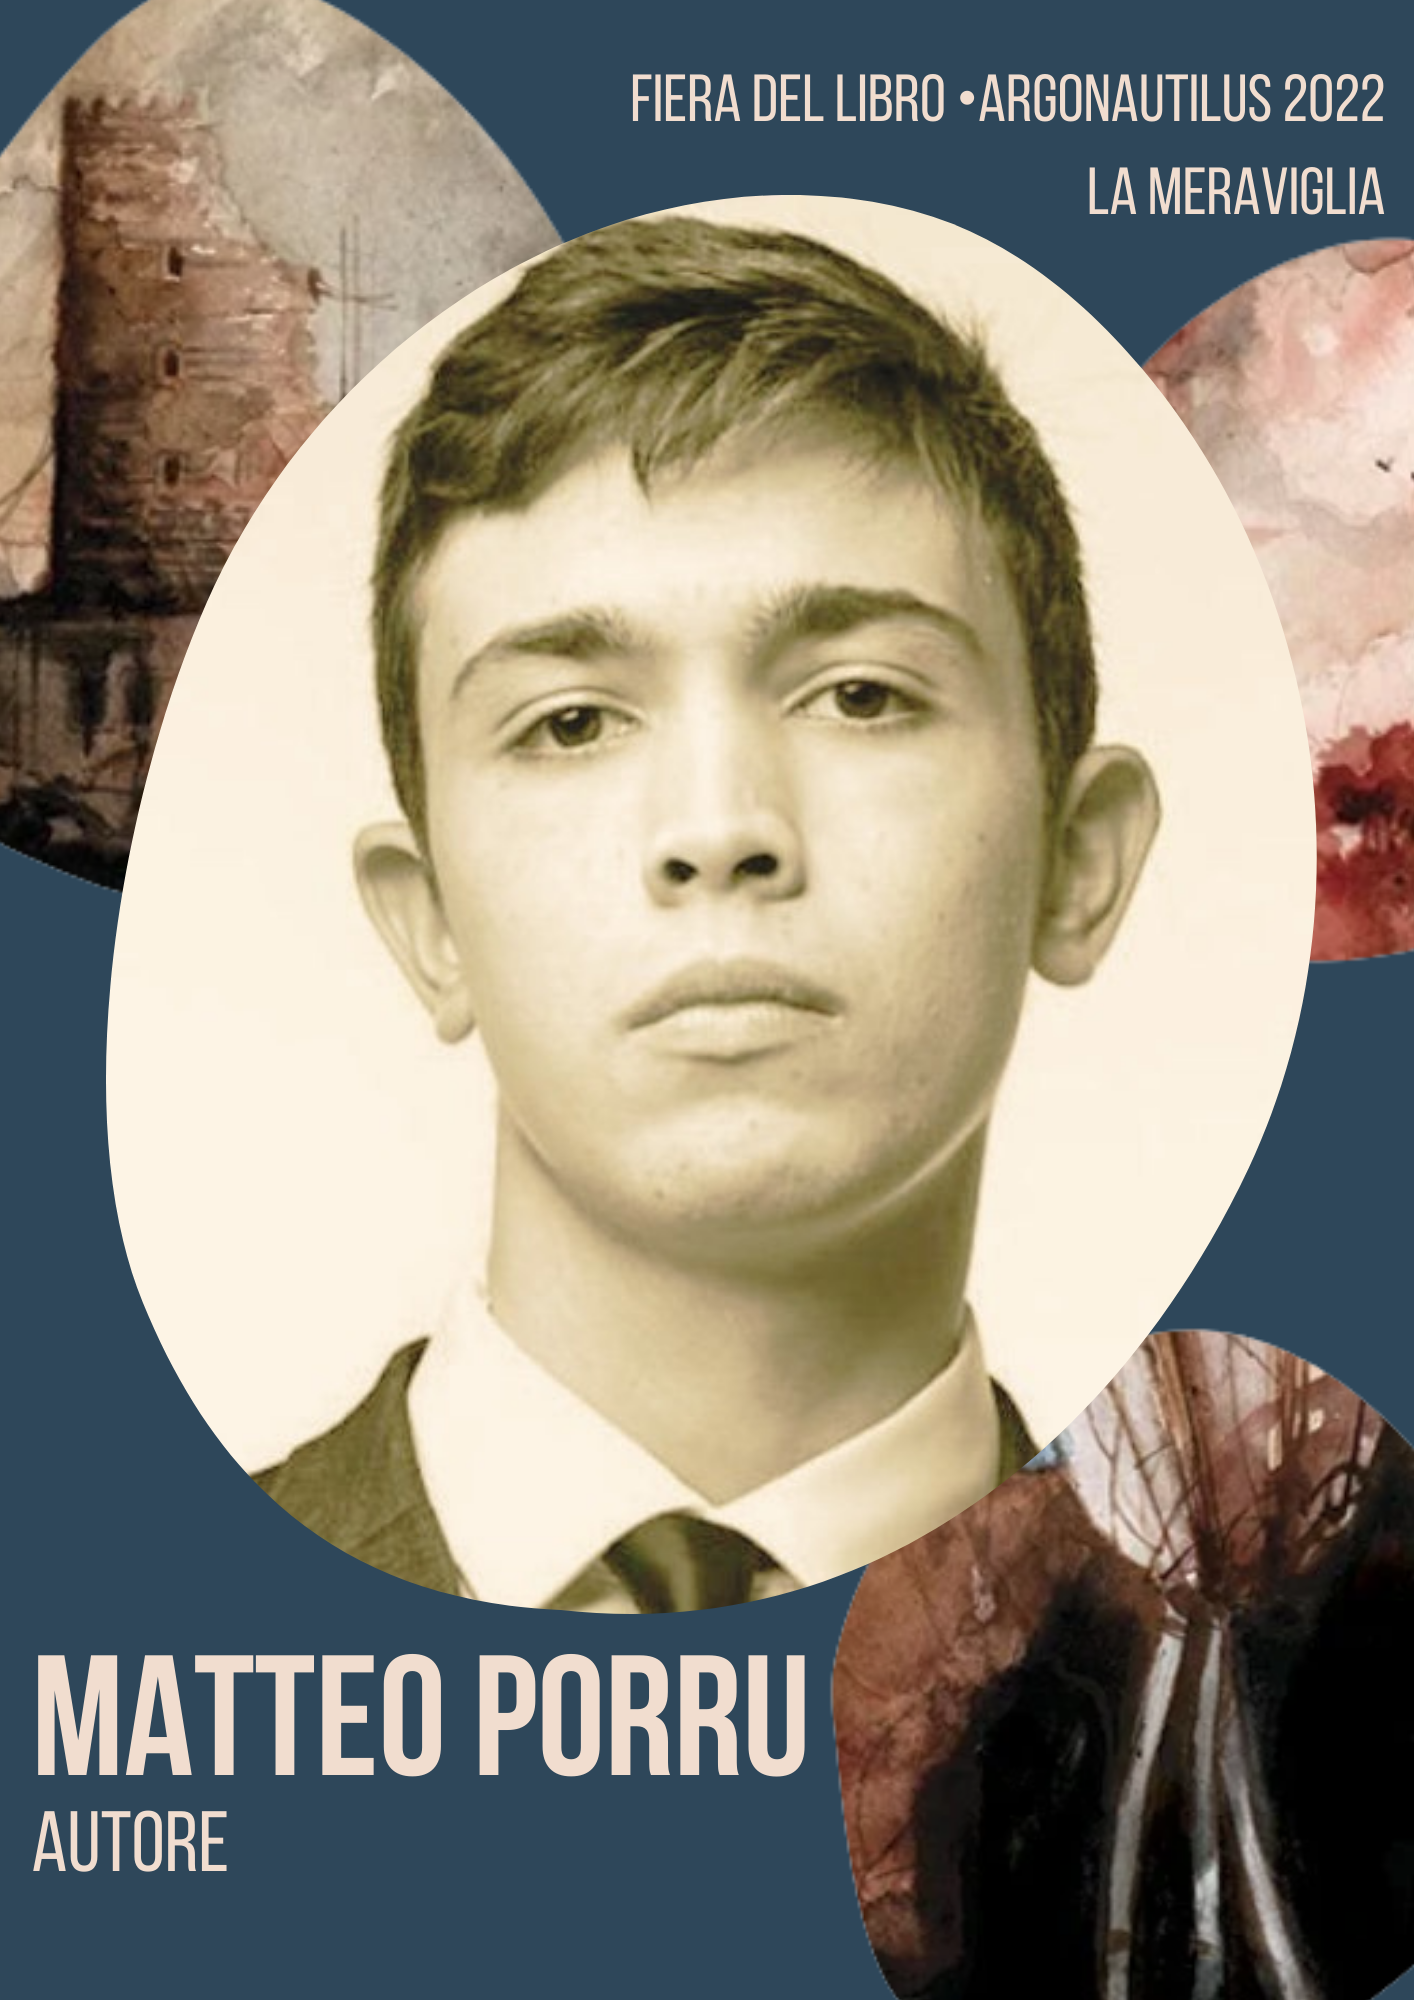 Matteo Porru